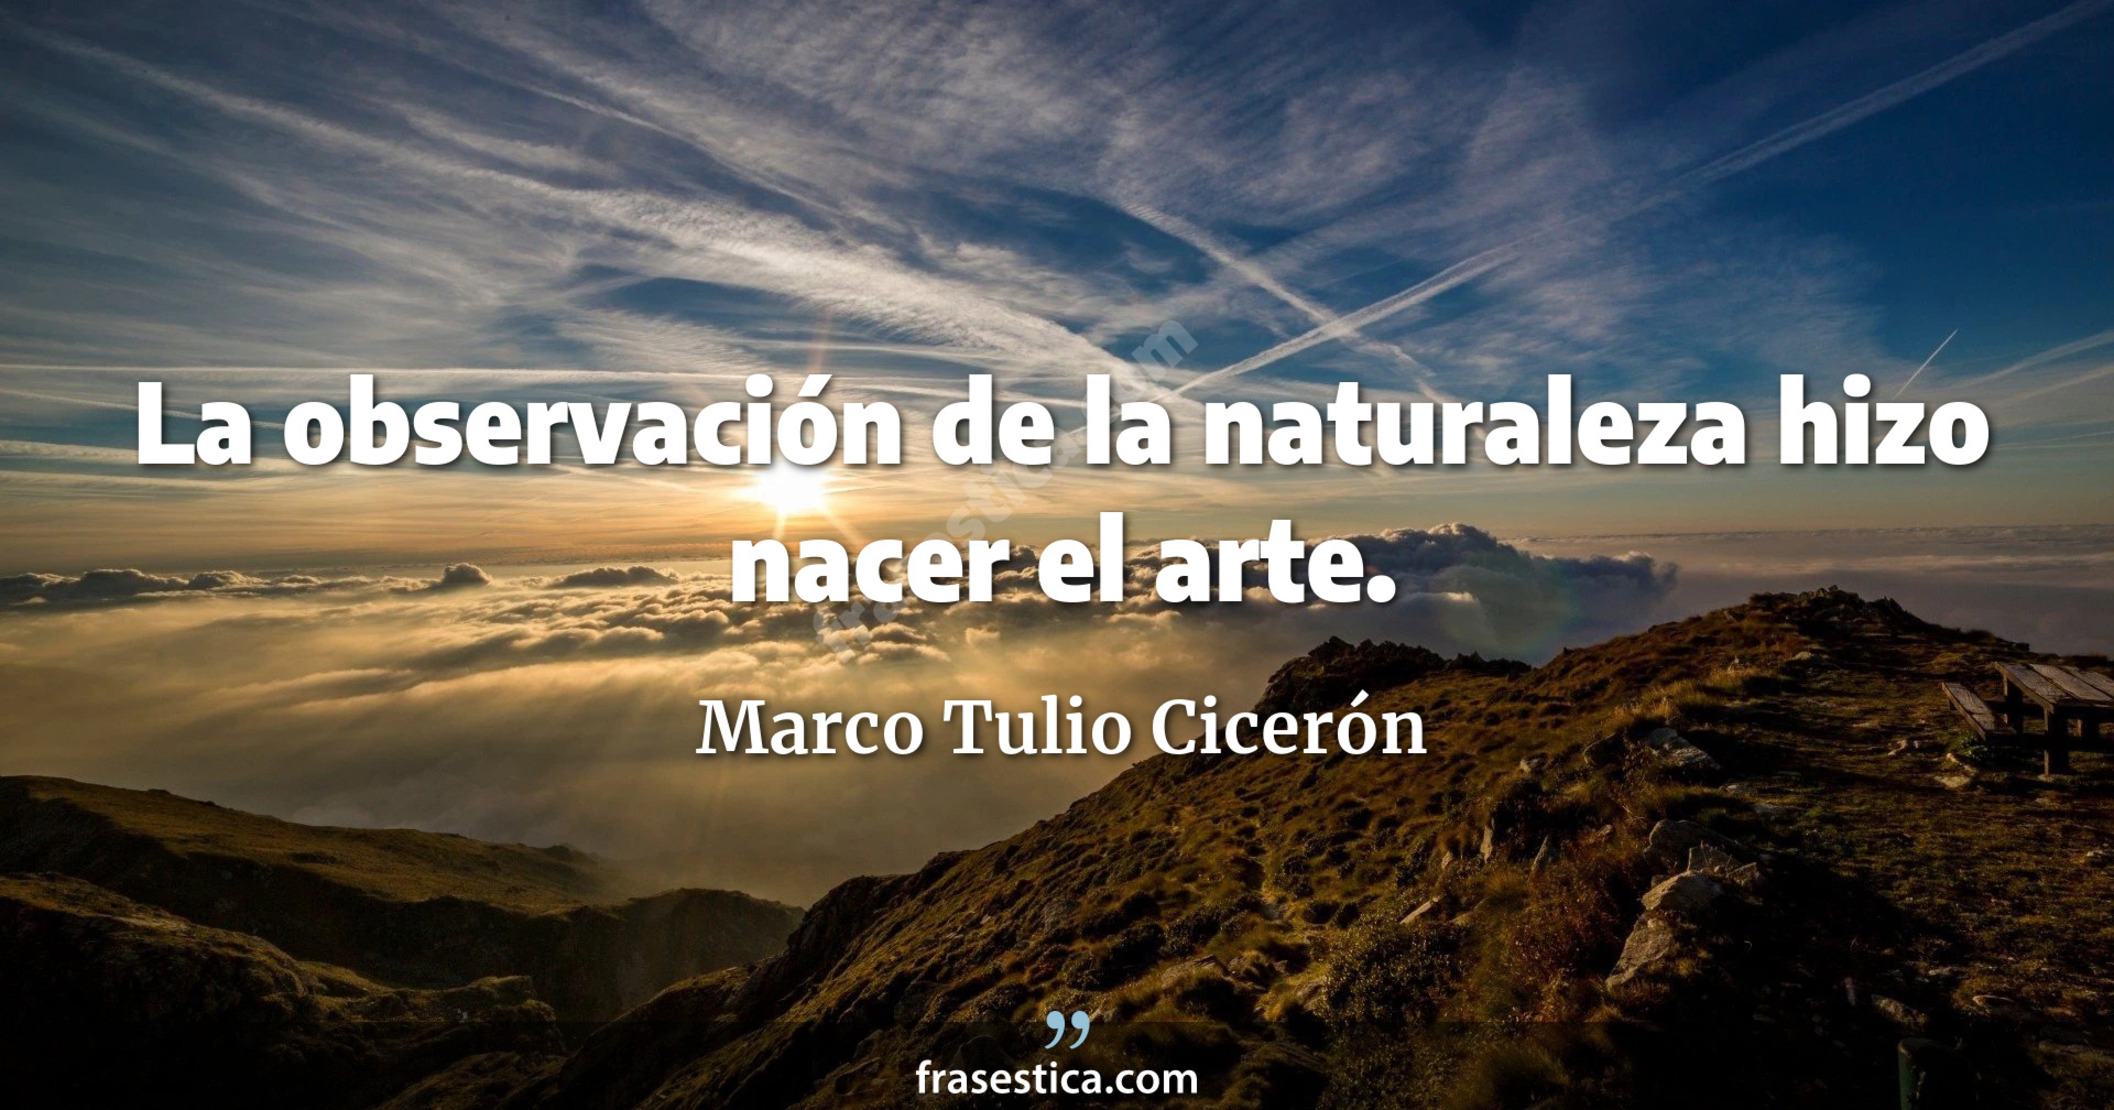 La observación de la naturaleza hizo nacer el arte. - Marco Tulio Cicerón